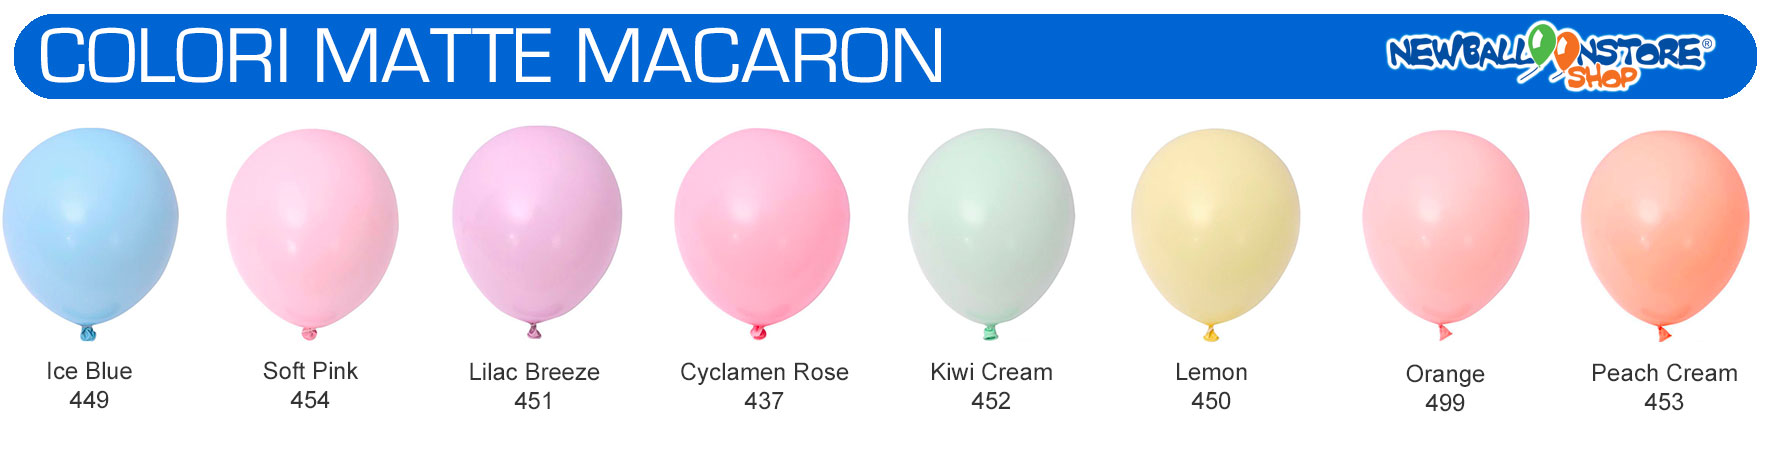 palloncini colori matte macaron